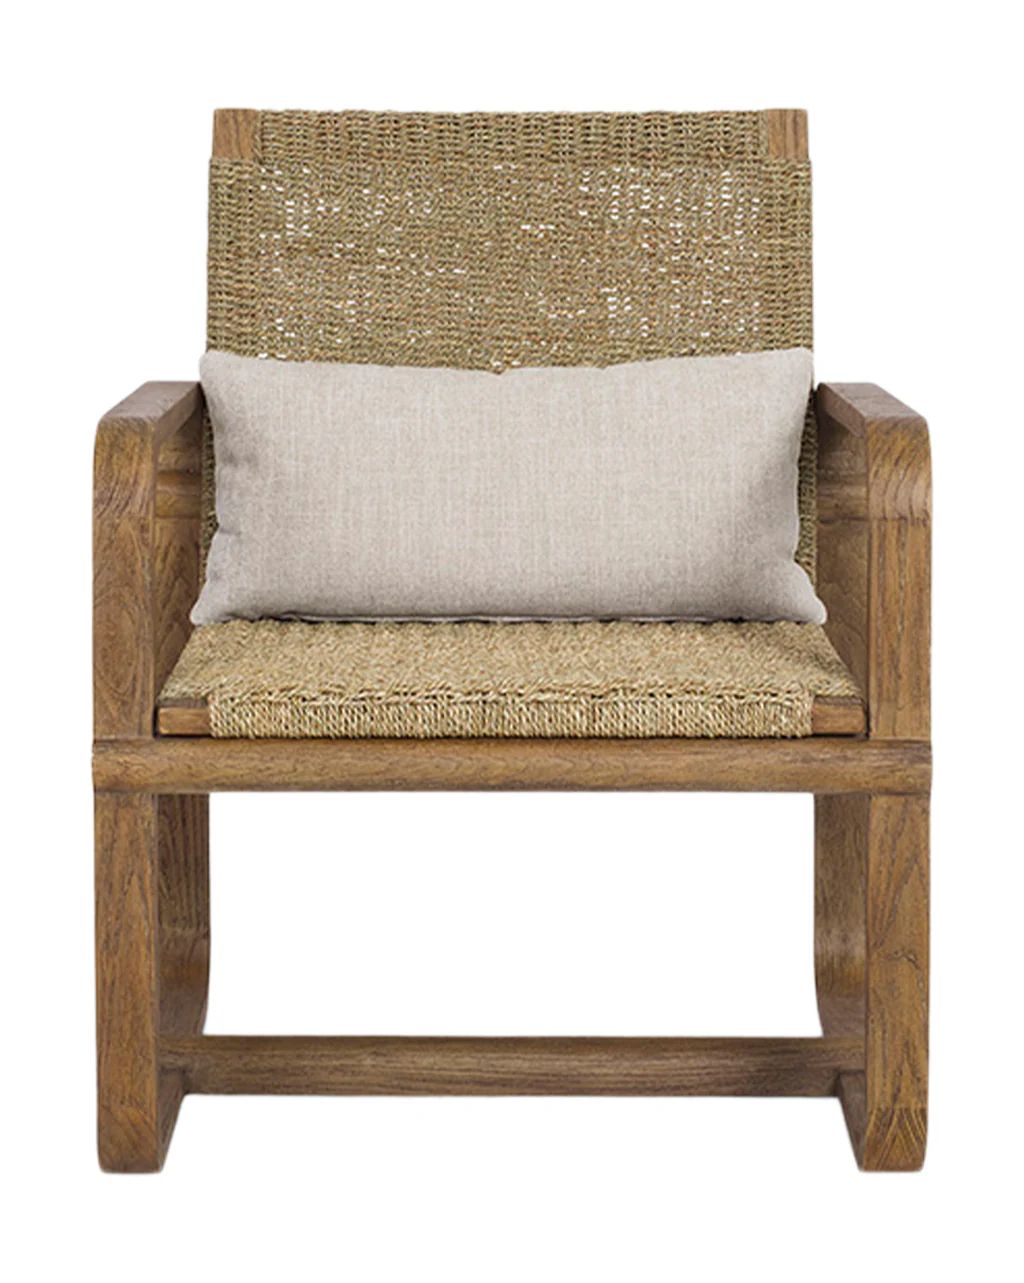 Deidra Chair | McGee & Co.